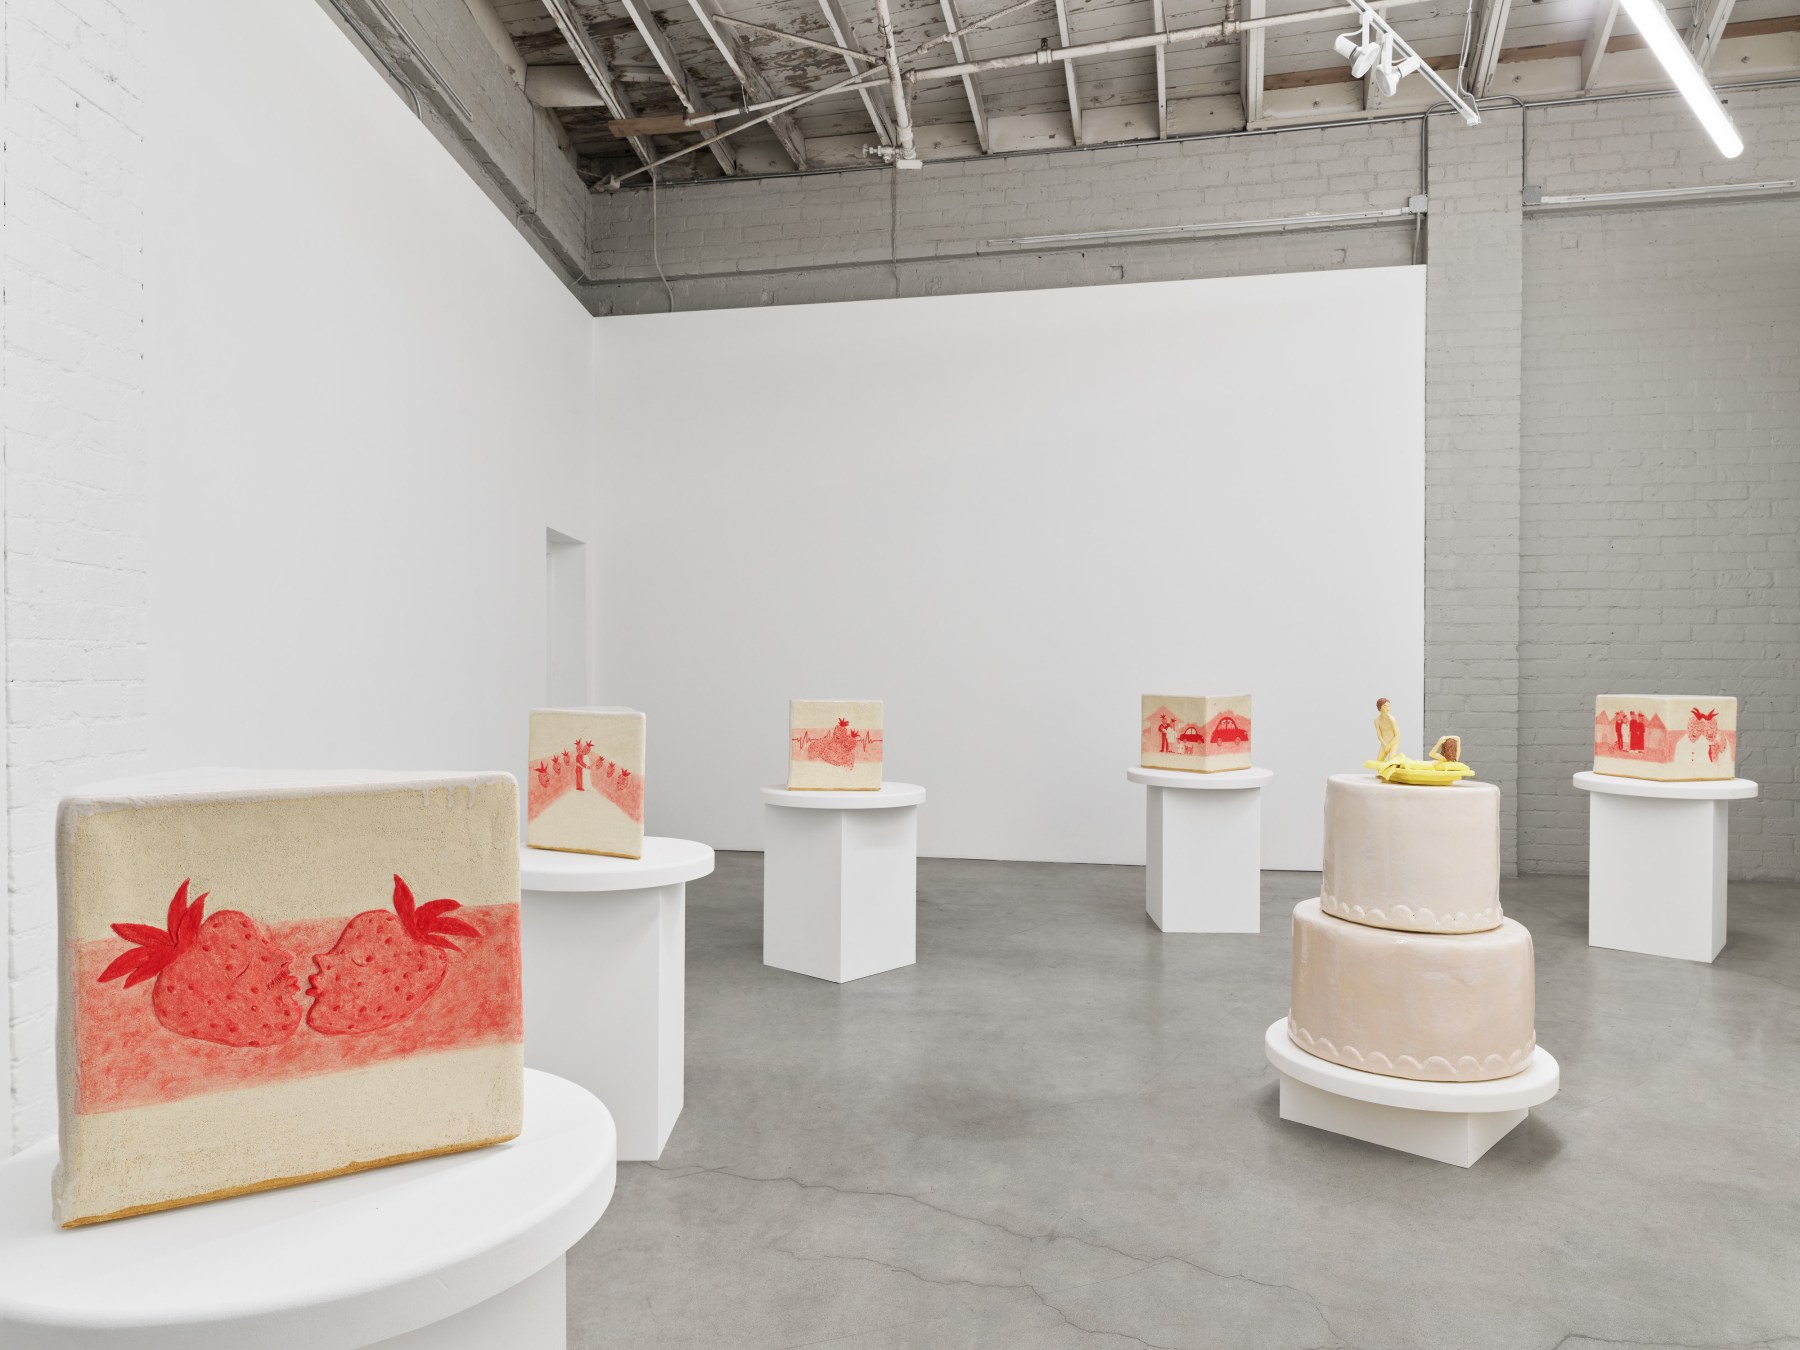 Elizabeth Jaeger, Piece of Cake, installation view, 2021